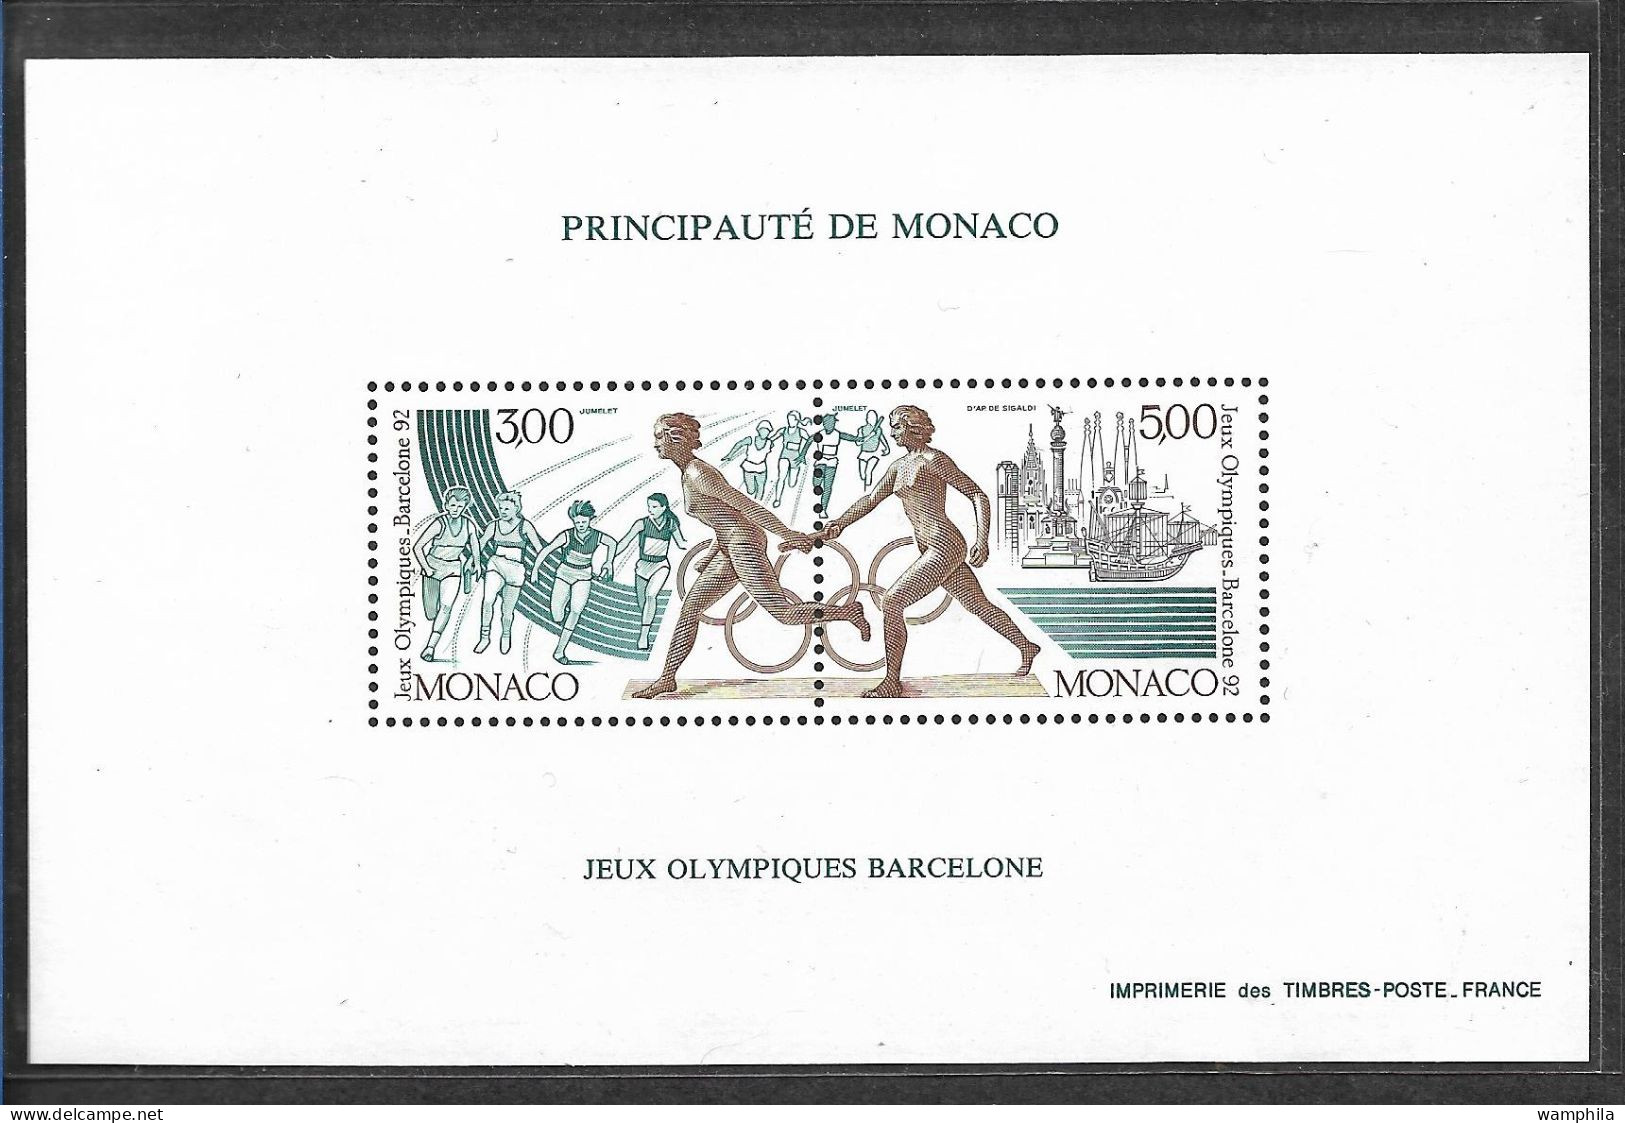 Monaco Bloc Spécial Gommé N°16**, Timbre N°1771/1773 Jeux Olympiques De Barcelone Cote 250€. - Errors And Oddities